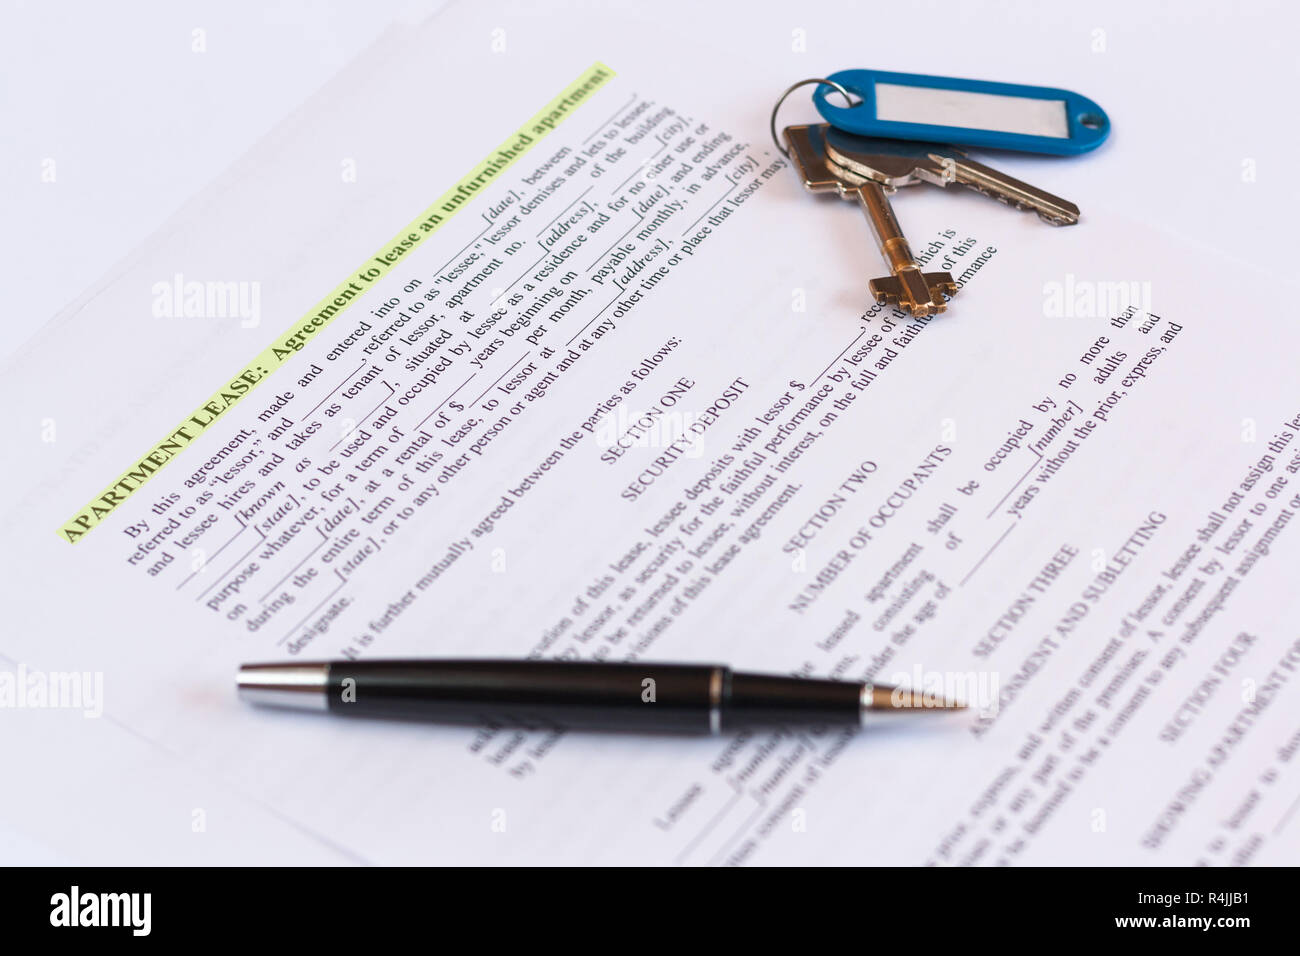 Contrat de Location / bail document avec des clés et un stylo. Contrat en anglais. Banque D'Images